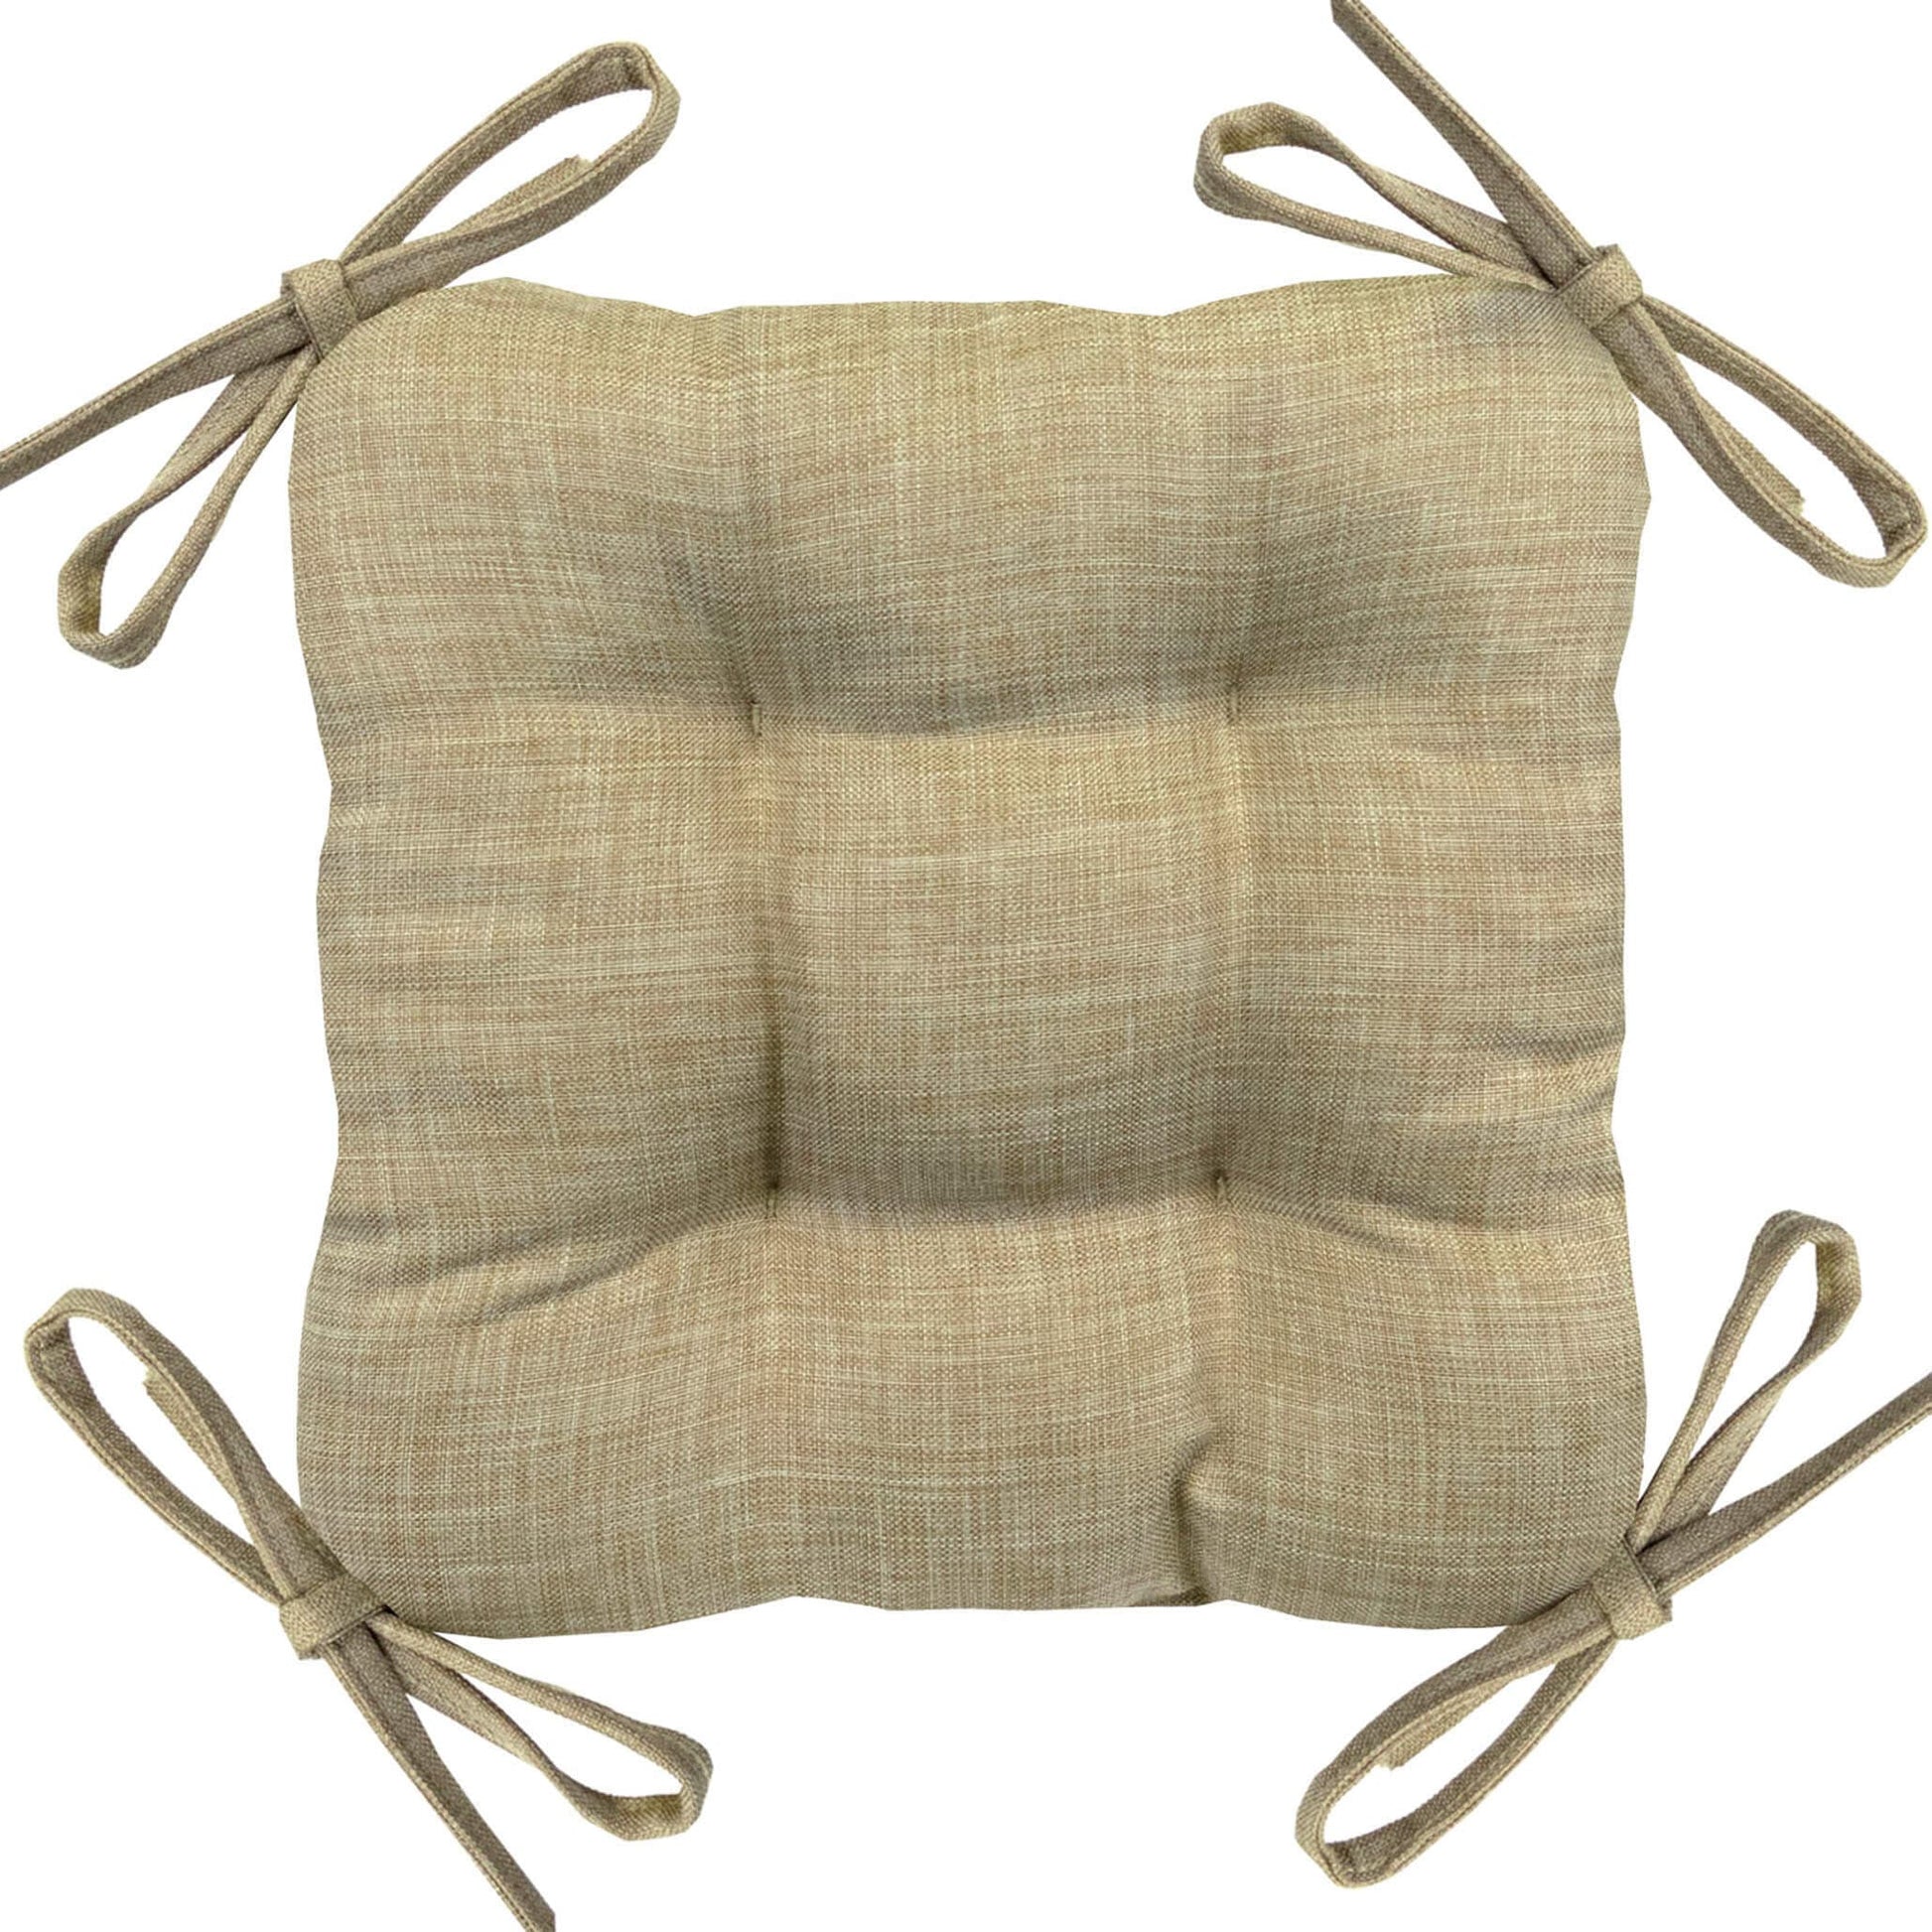 https://barnetthomedecor.com/cdn/shop/products/industrial_barstool_cushions_-_hayden_beige_-_barnett_home_decor.jpg?v=1651113401&width=1946